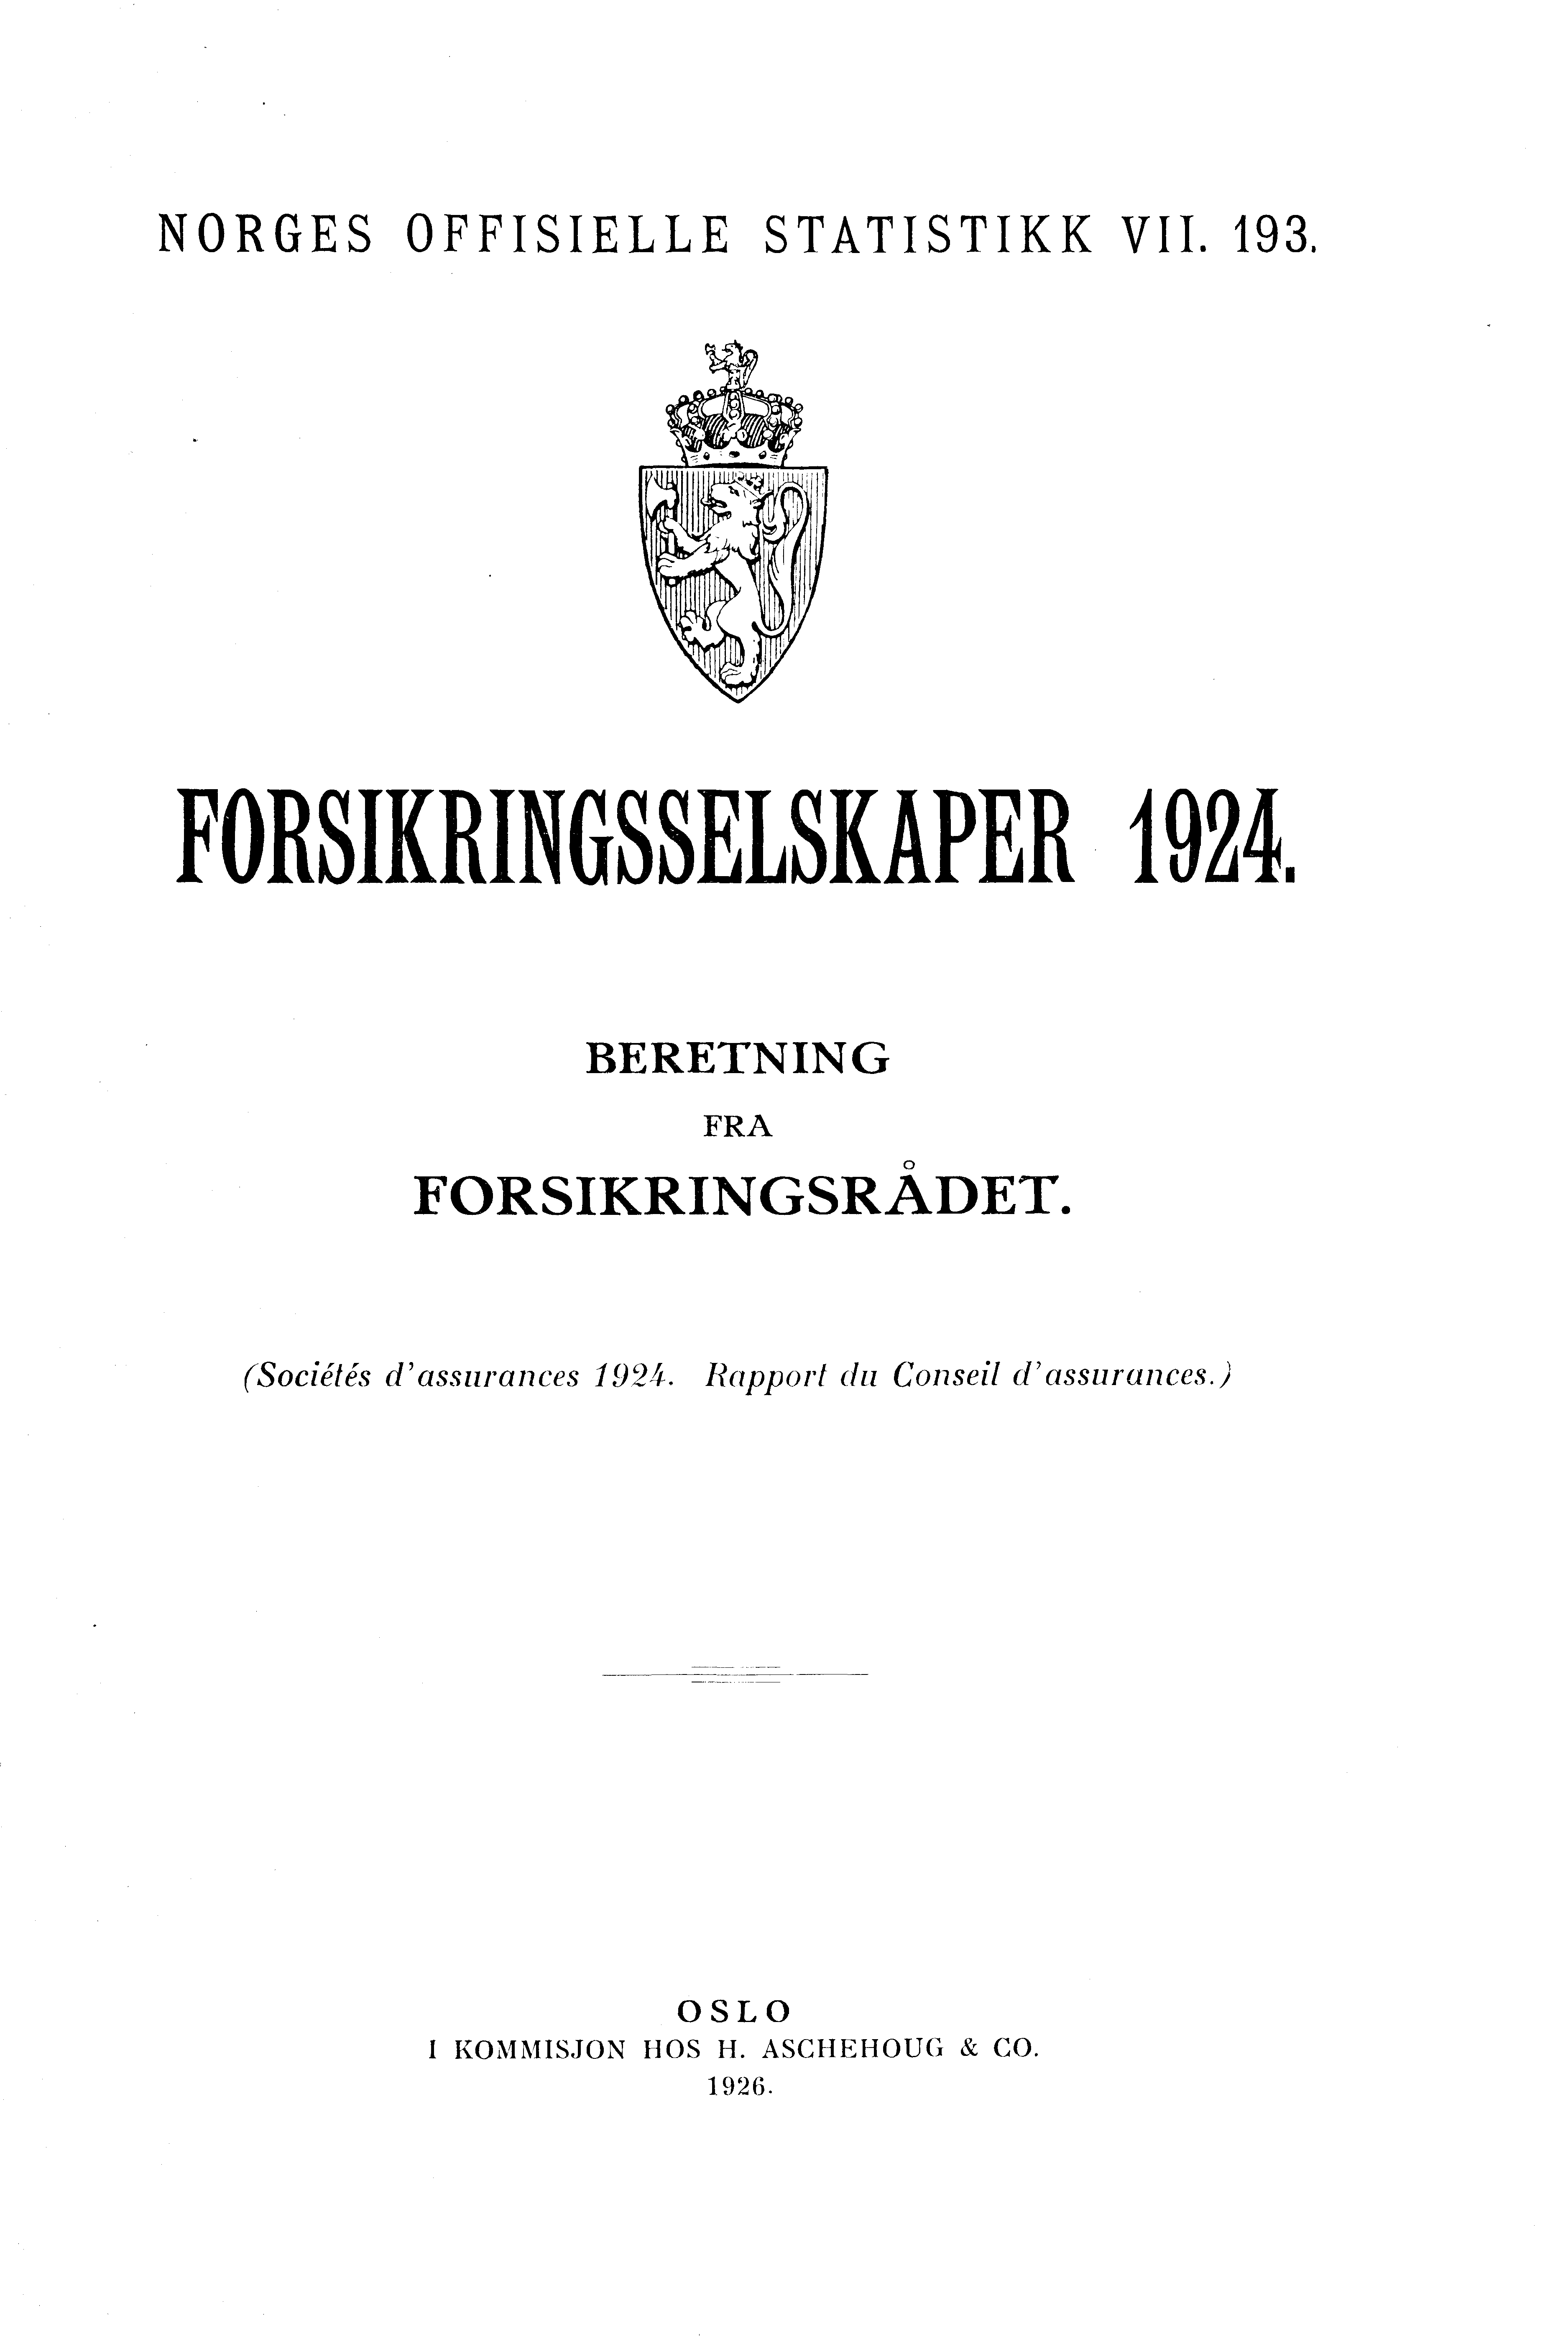 NORGES OFFISIELLE STATISTIKK VII. 193. FORSIKRINGSSELSKAPER BERETNING FRA FORSIKRINGSRÅDET.